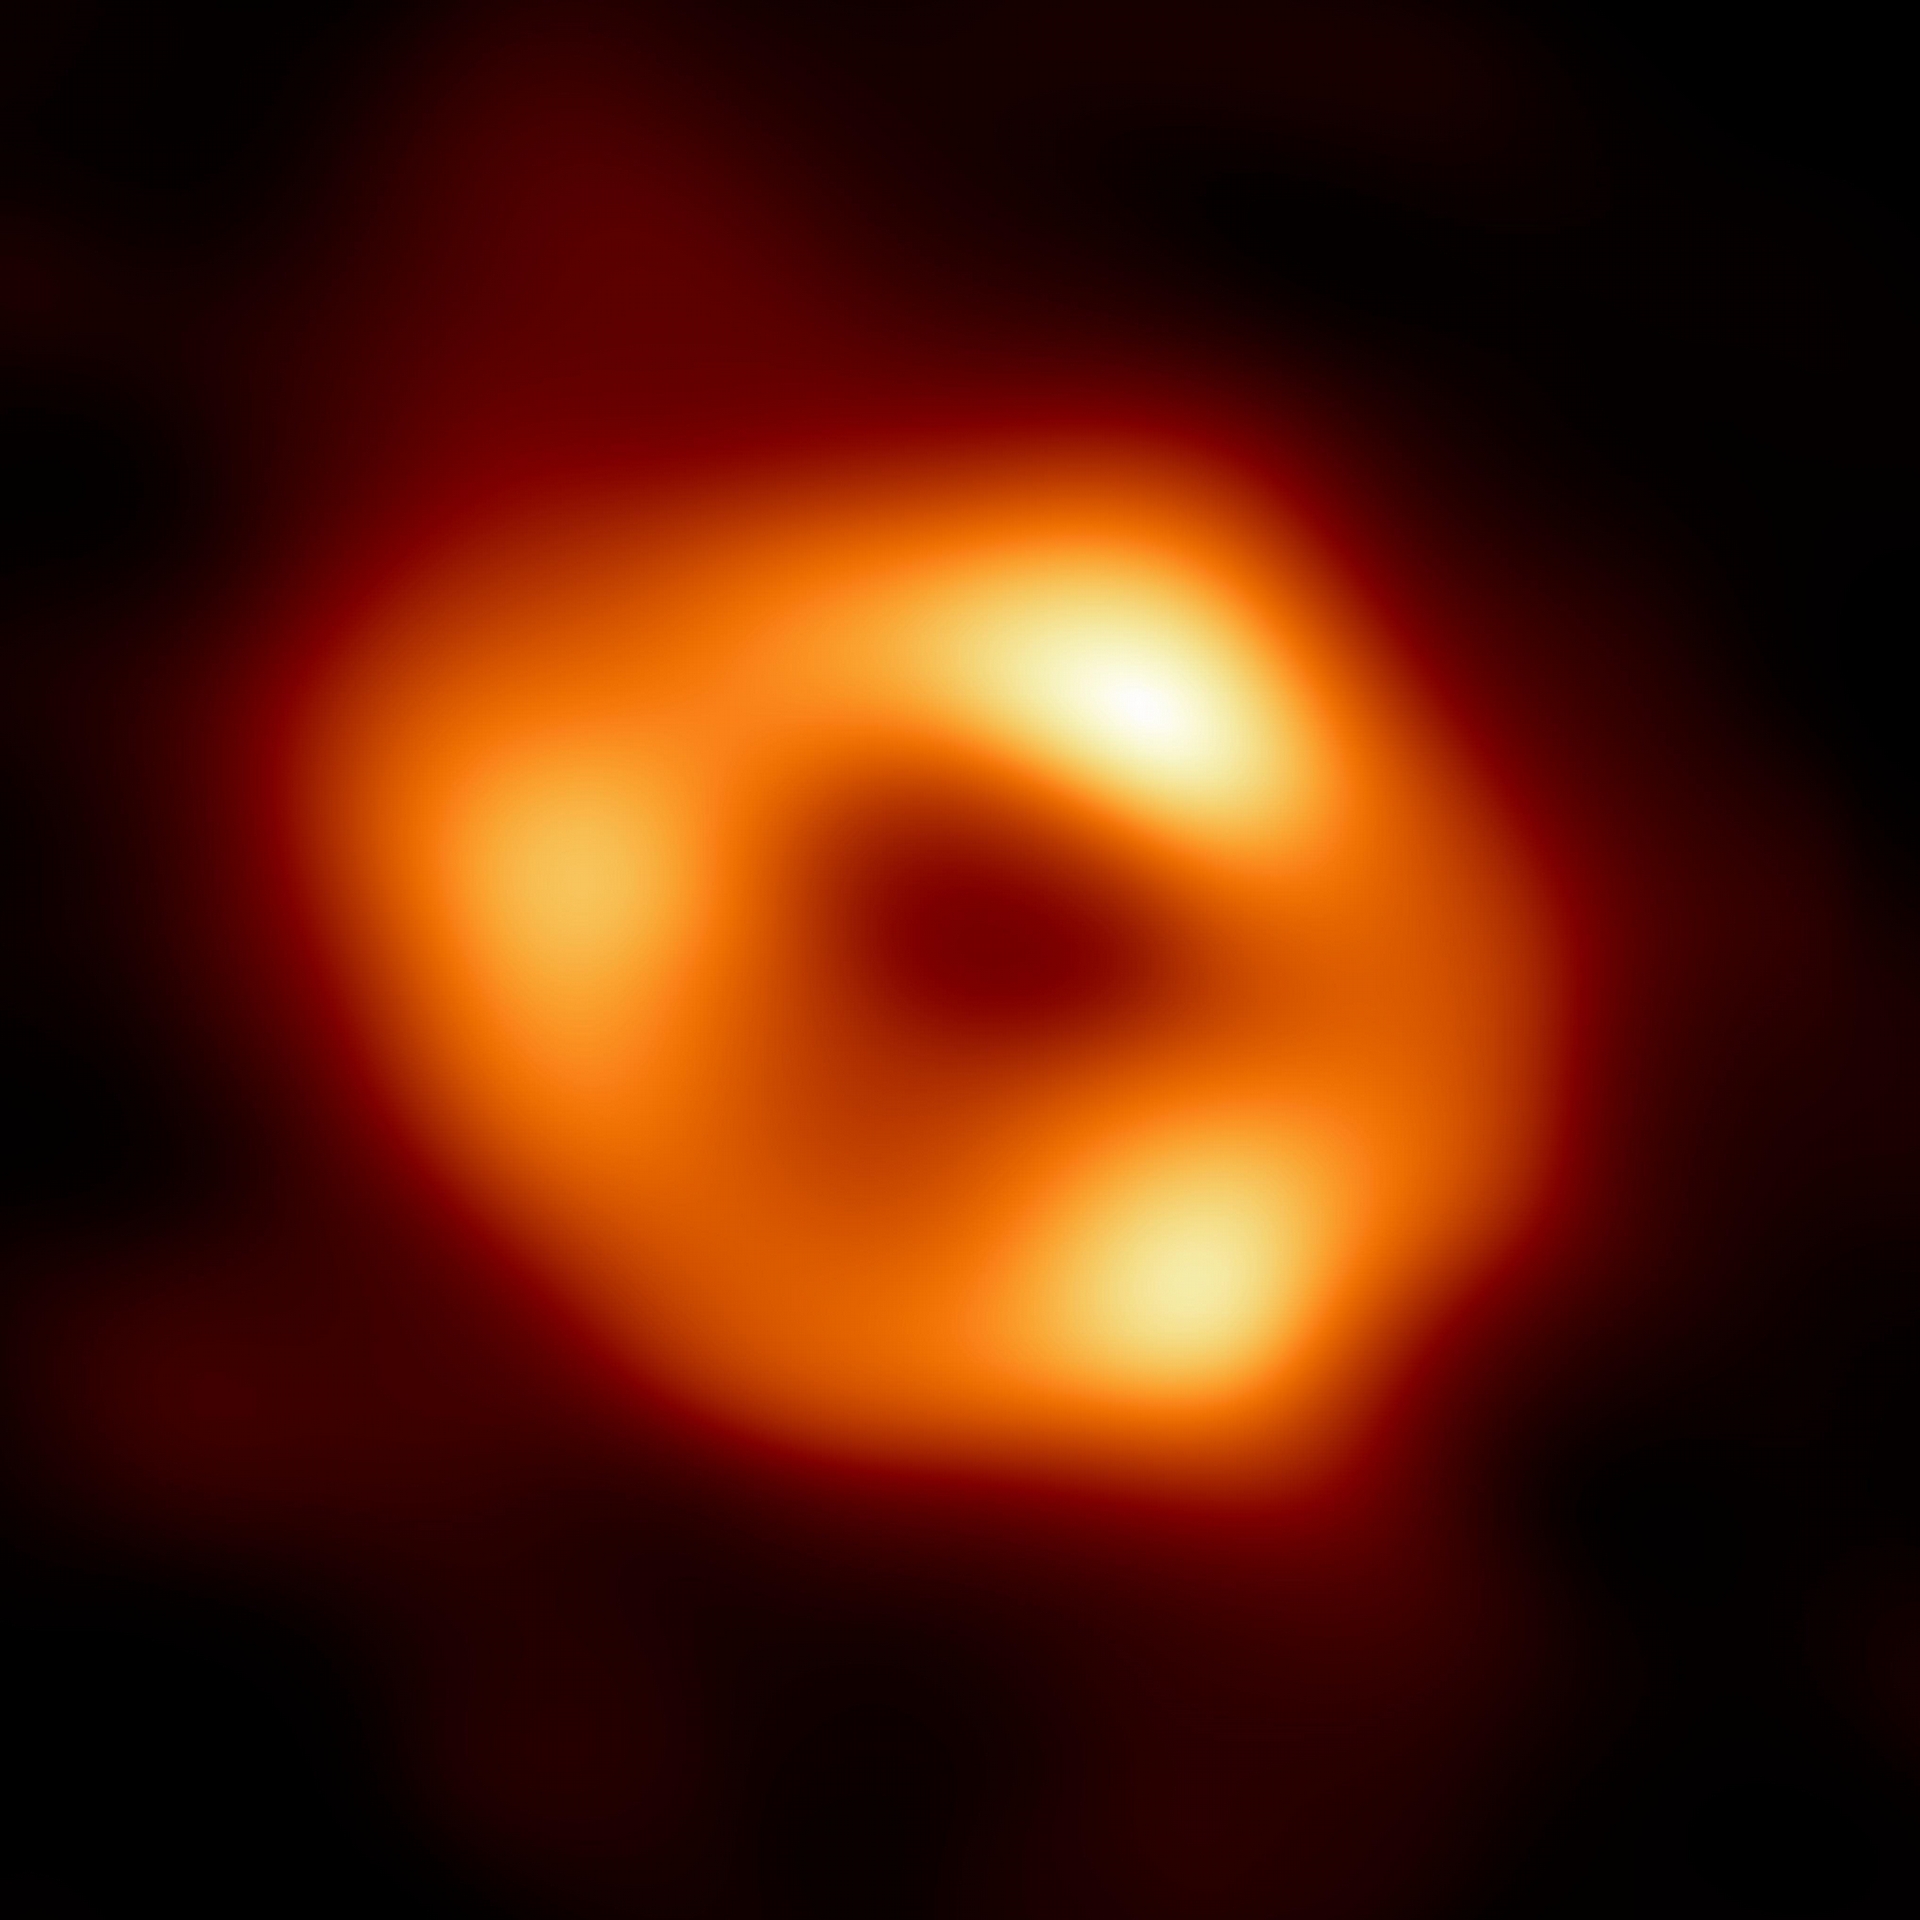 揭开银河系中心超大质量黑洞人马座A星的神秘面纱